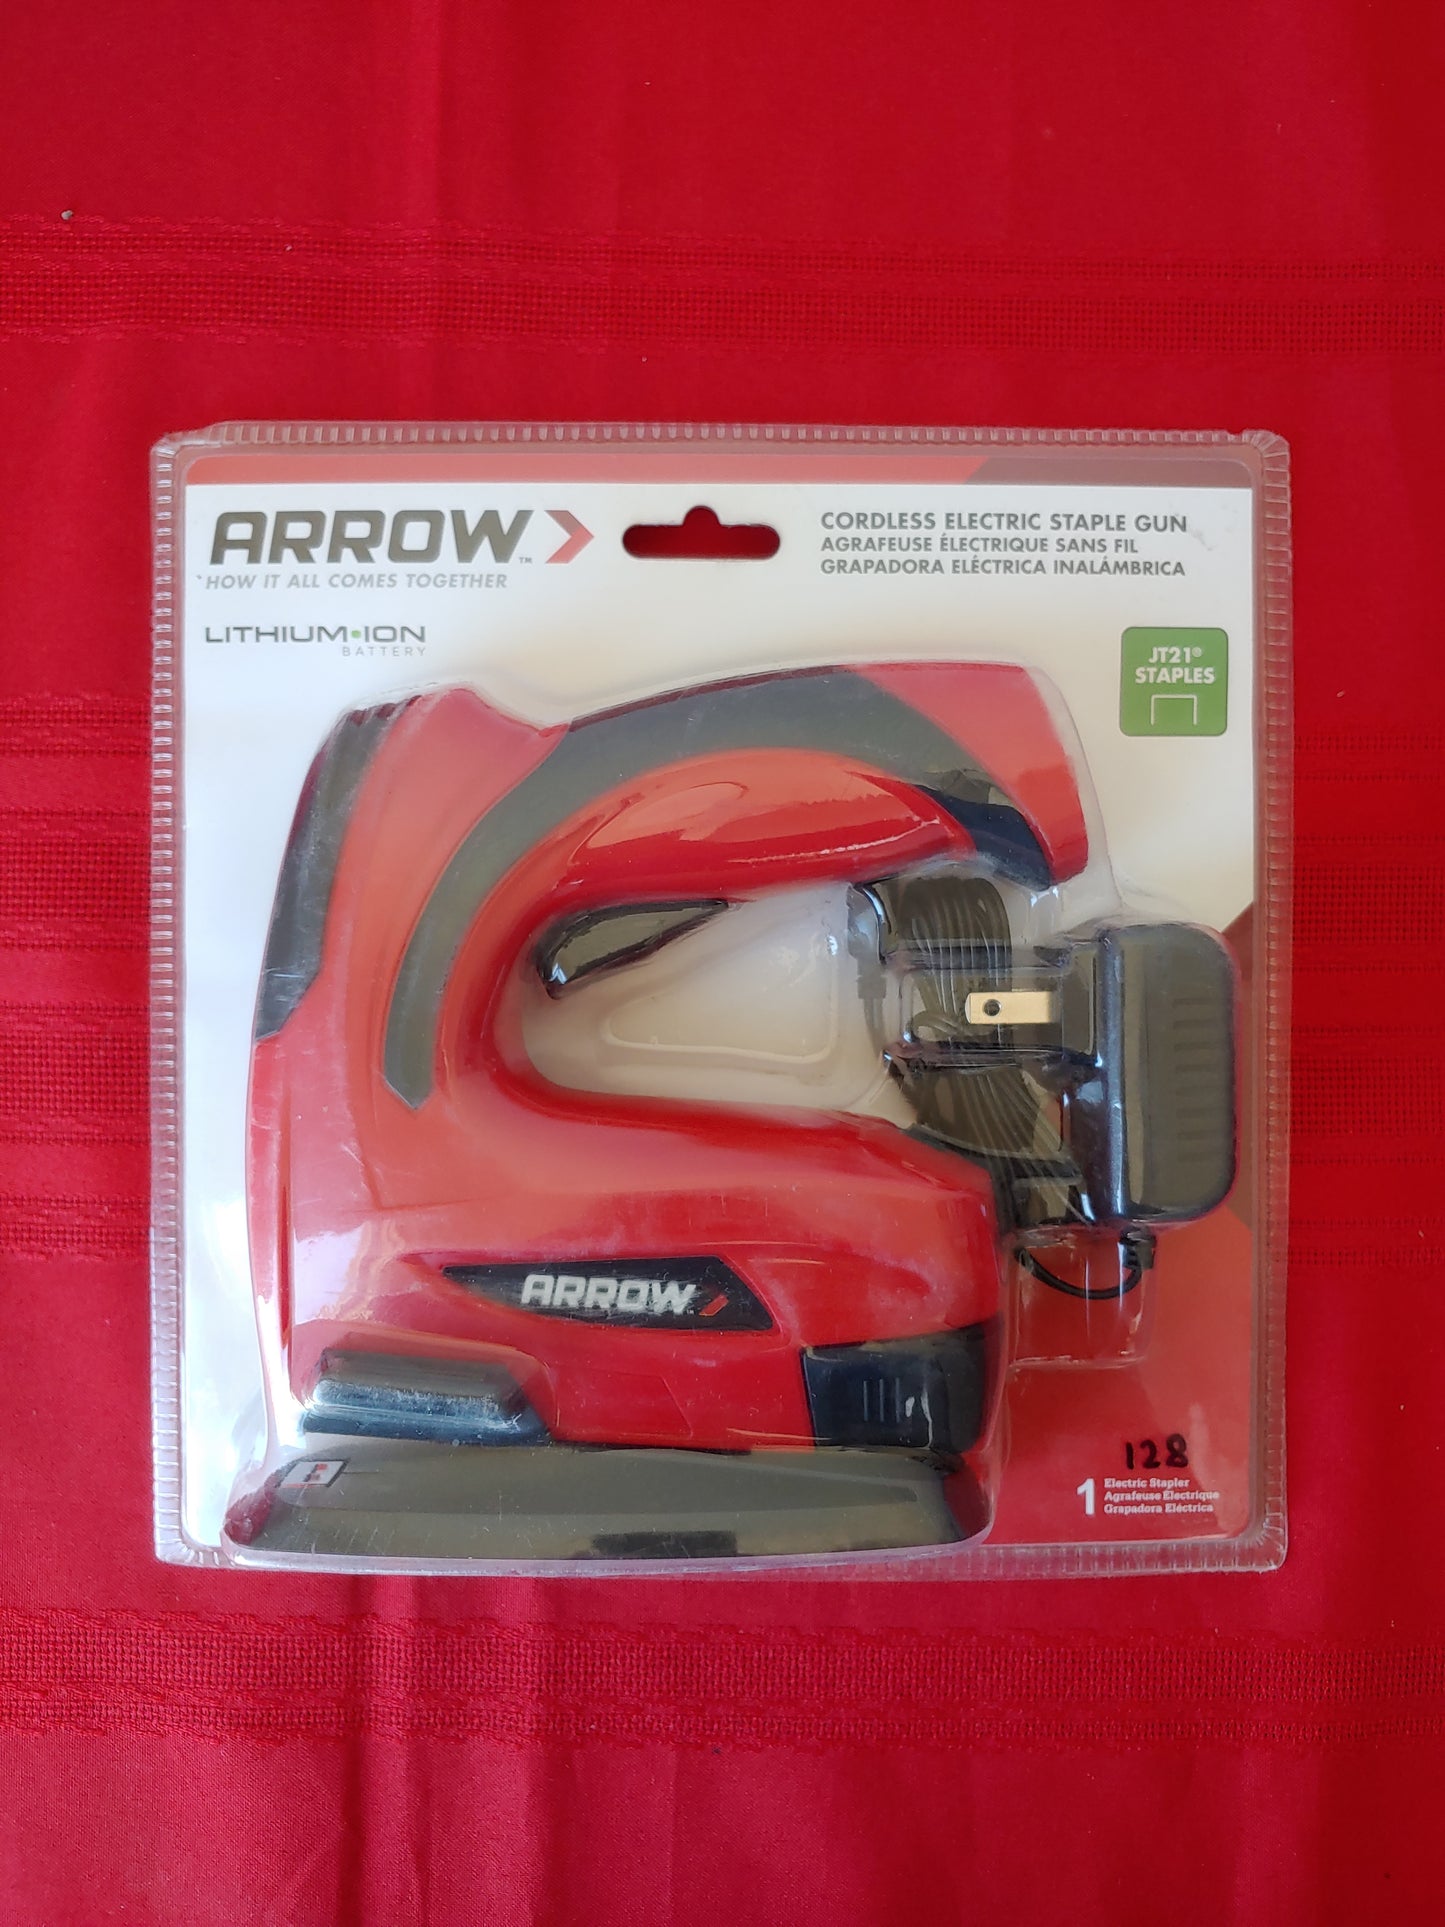 Engrapadora eléctrica inalámbrica de batería - Arrow (Nuevo, caja abierta)